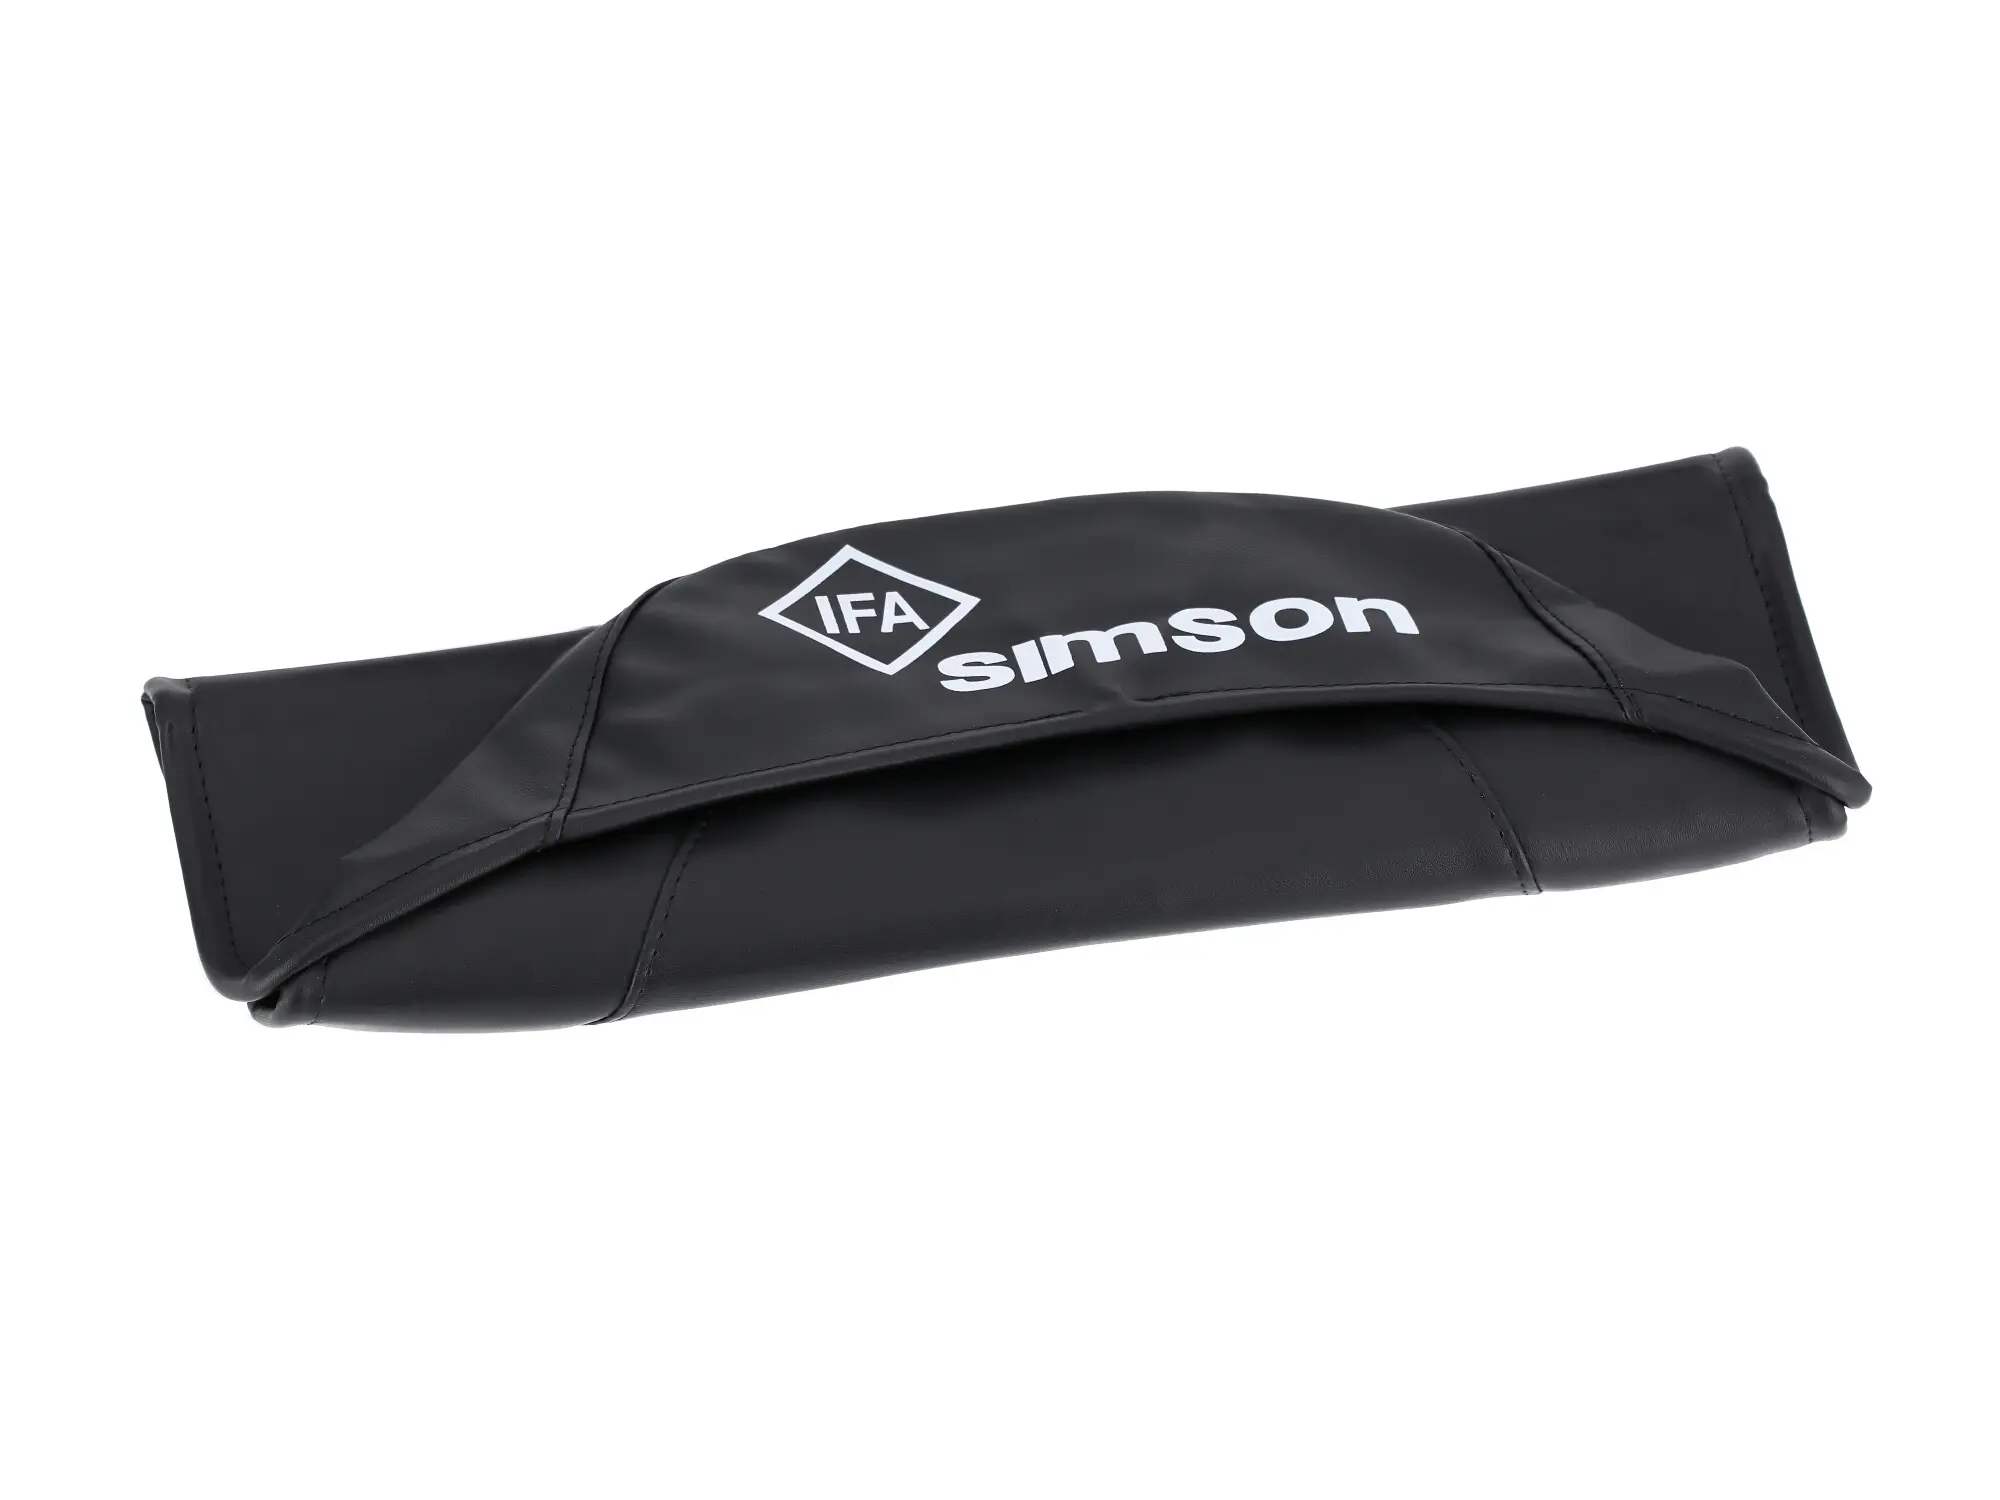 Sitzbezug glatt, schwarz für kurze Sitzbank mit SIMSON-Schriftzug - Simson KR51/1 Schwalbe, SR4-2 Star, Art.-Nr.: 10002830 - Bild 1